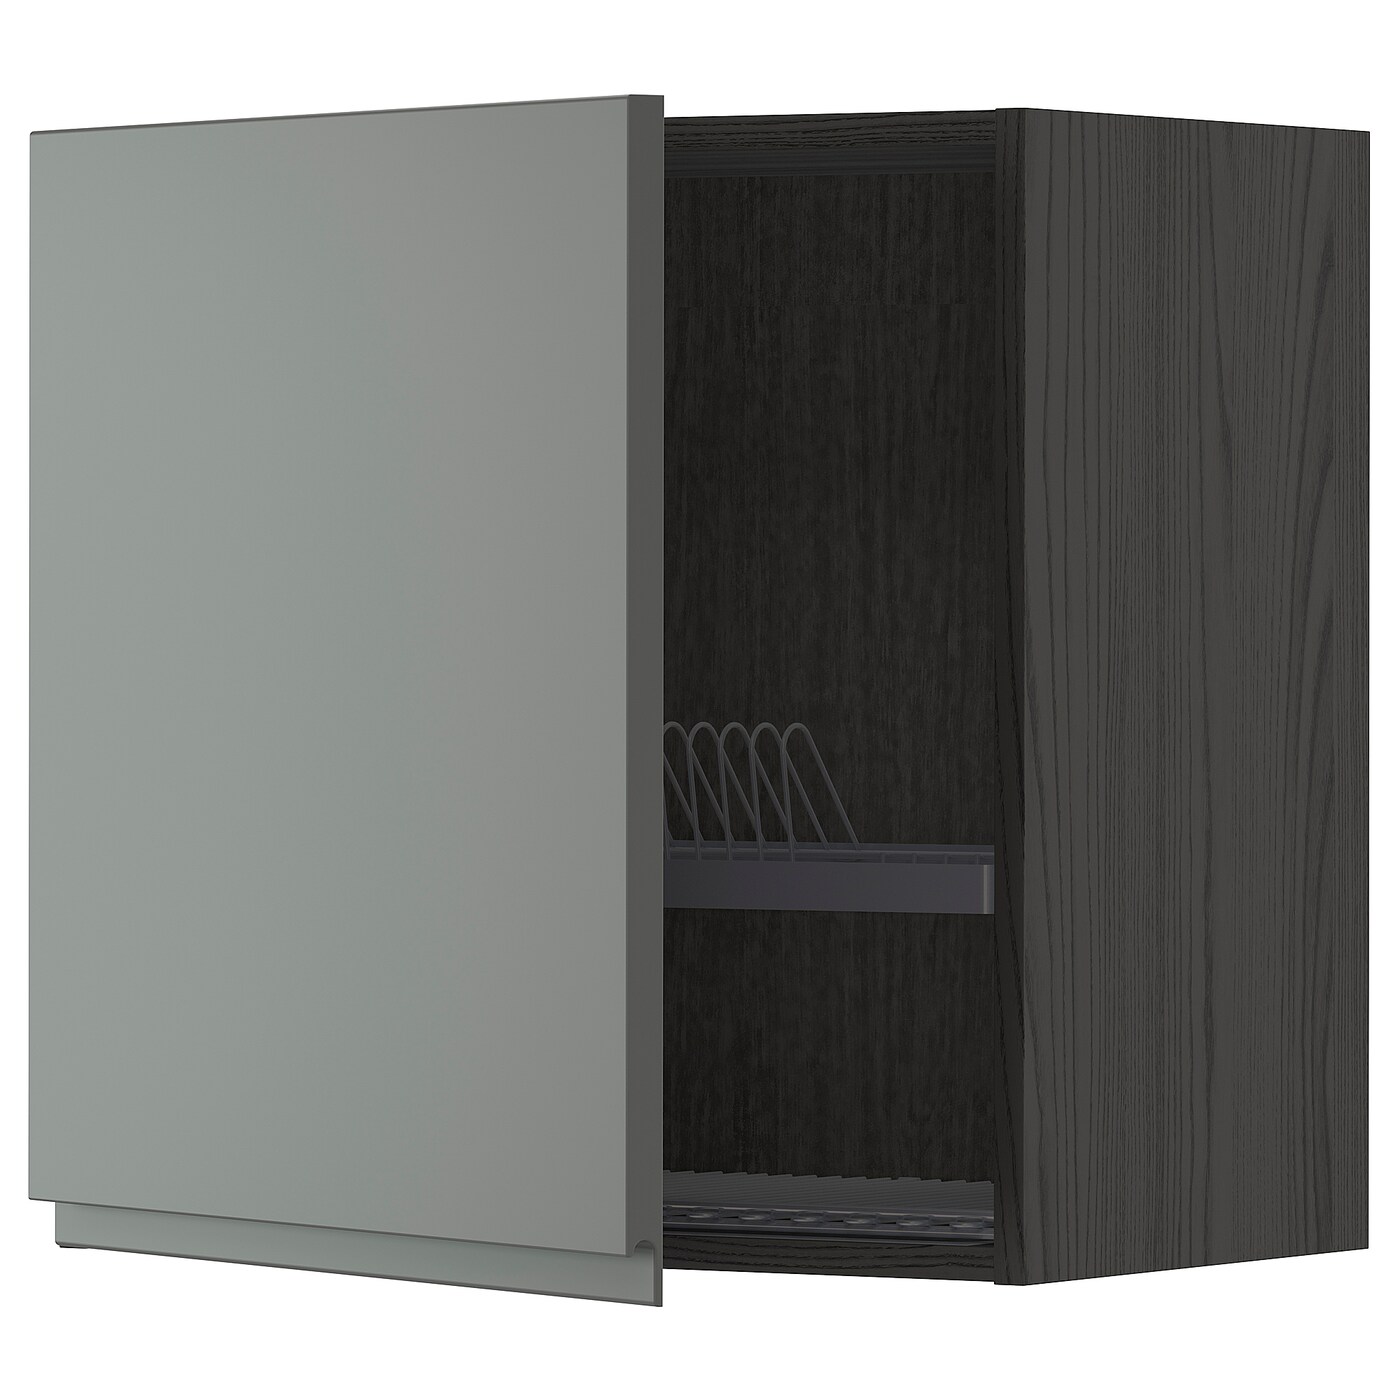 Навесной шкаф с сушилкой - METOD IKEA/ МЕТОД ИКЕА, 60х60 см, черный/серый